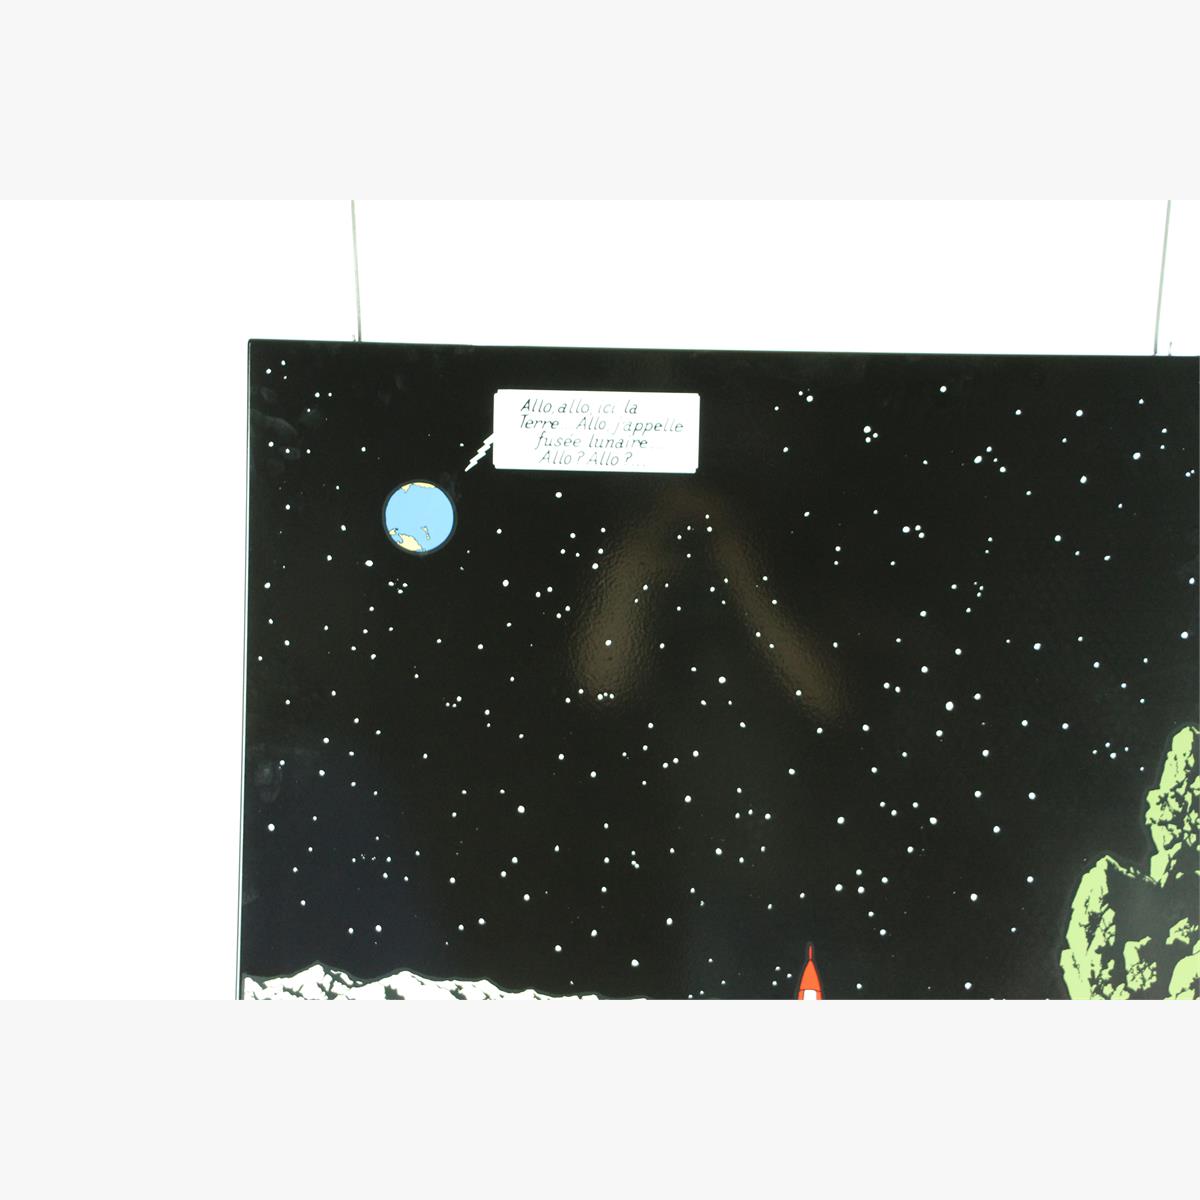 Afbeeldingen van emaille bord kuifje  uit het album mannen op de maan franse tekst plaque émaillée 99 ex 1985 